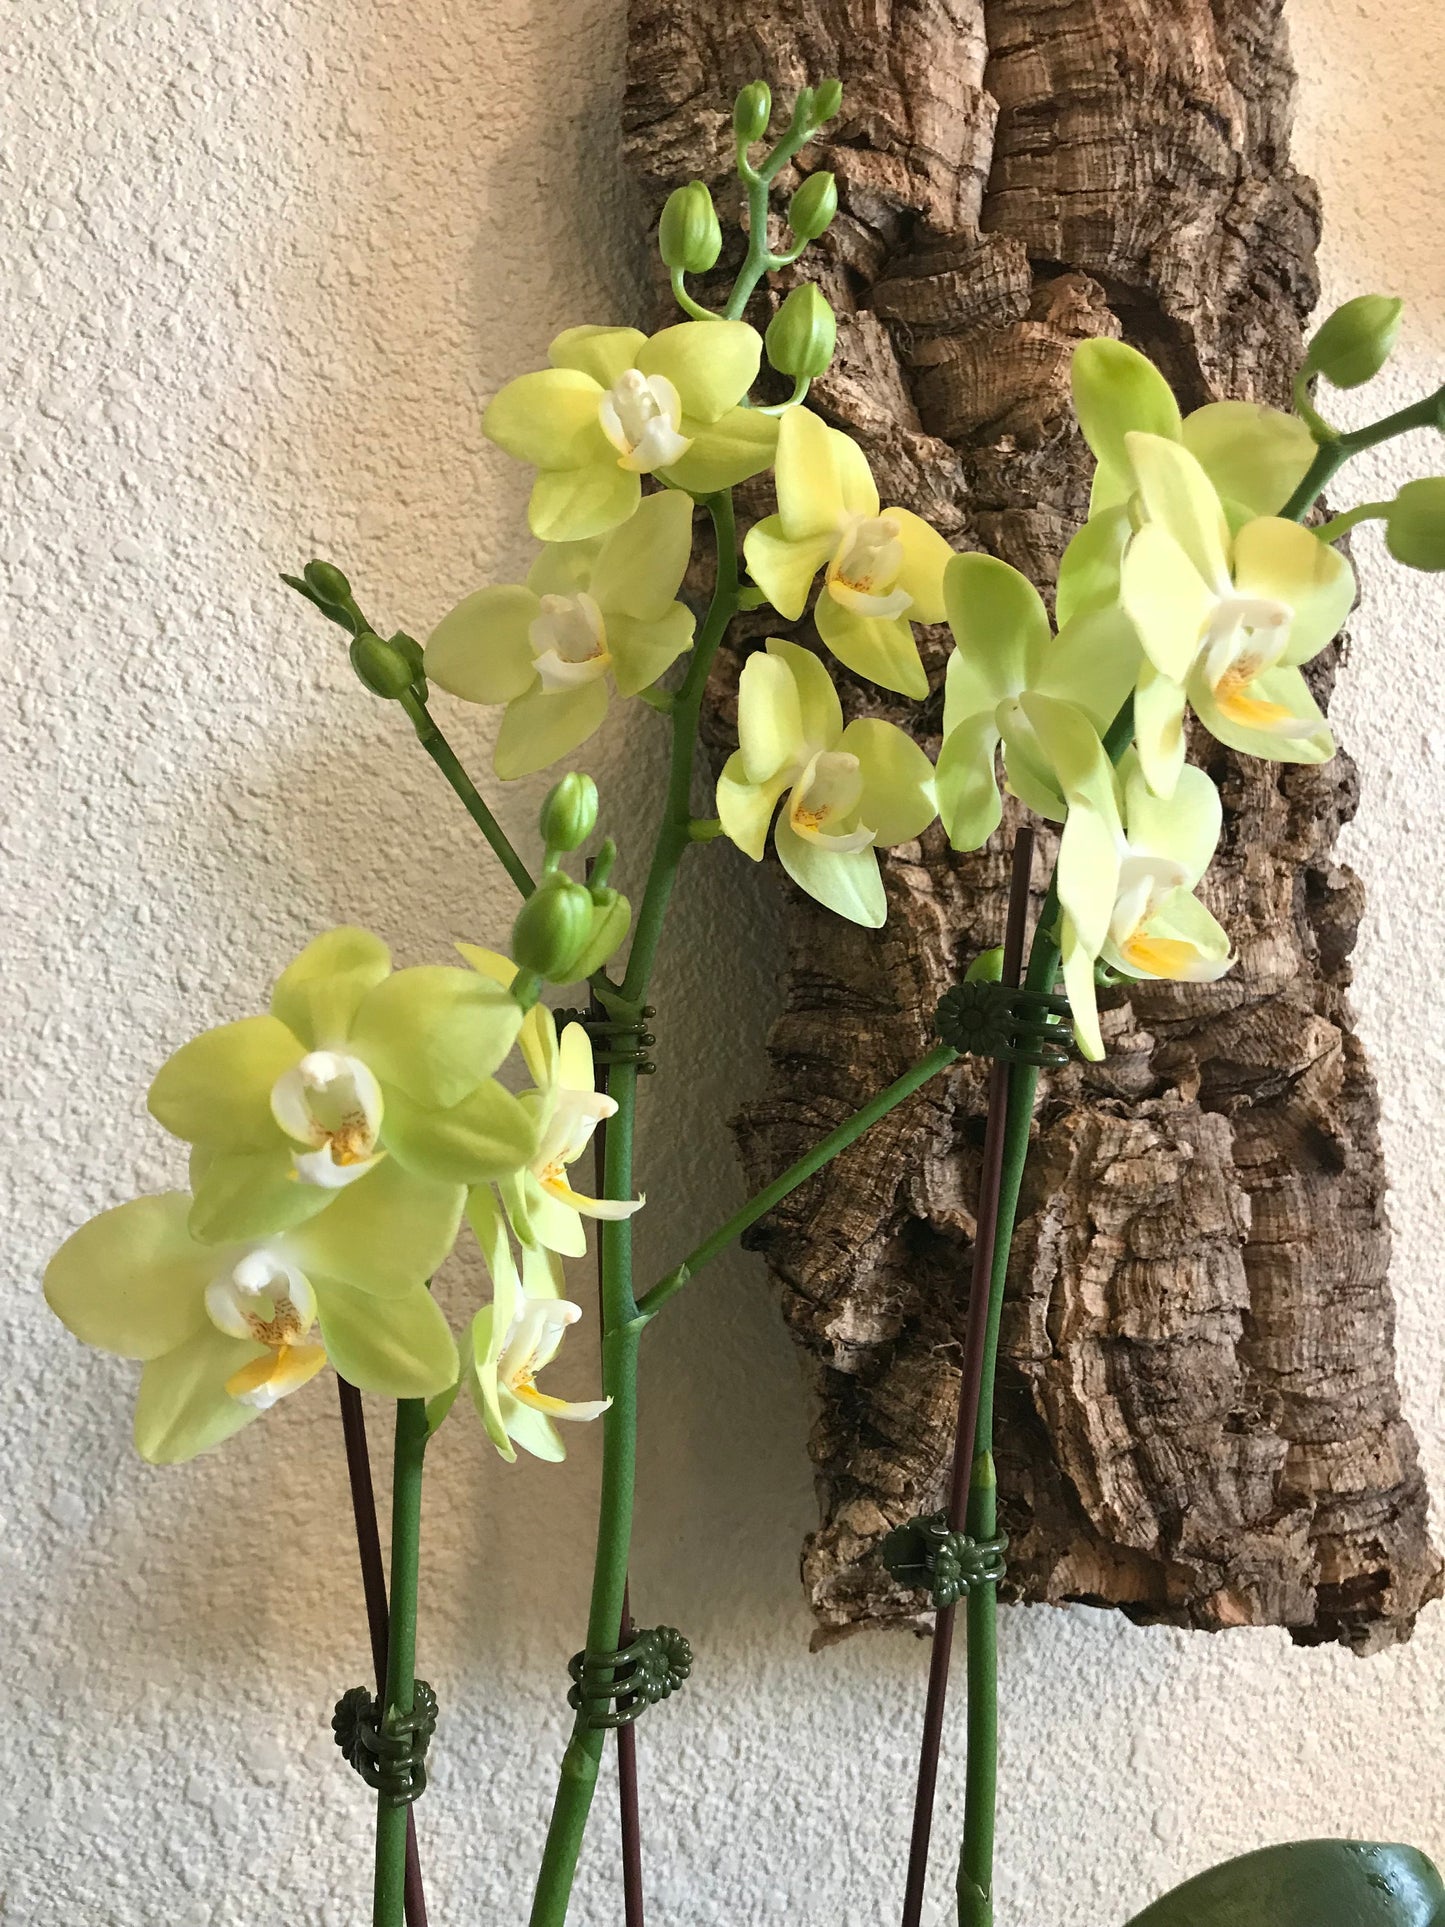 Kokedama - Moss ball with beautiful large yellow-three stem orchid